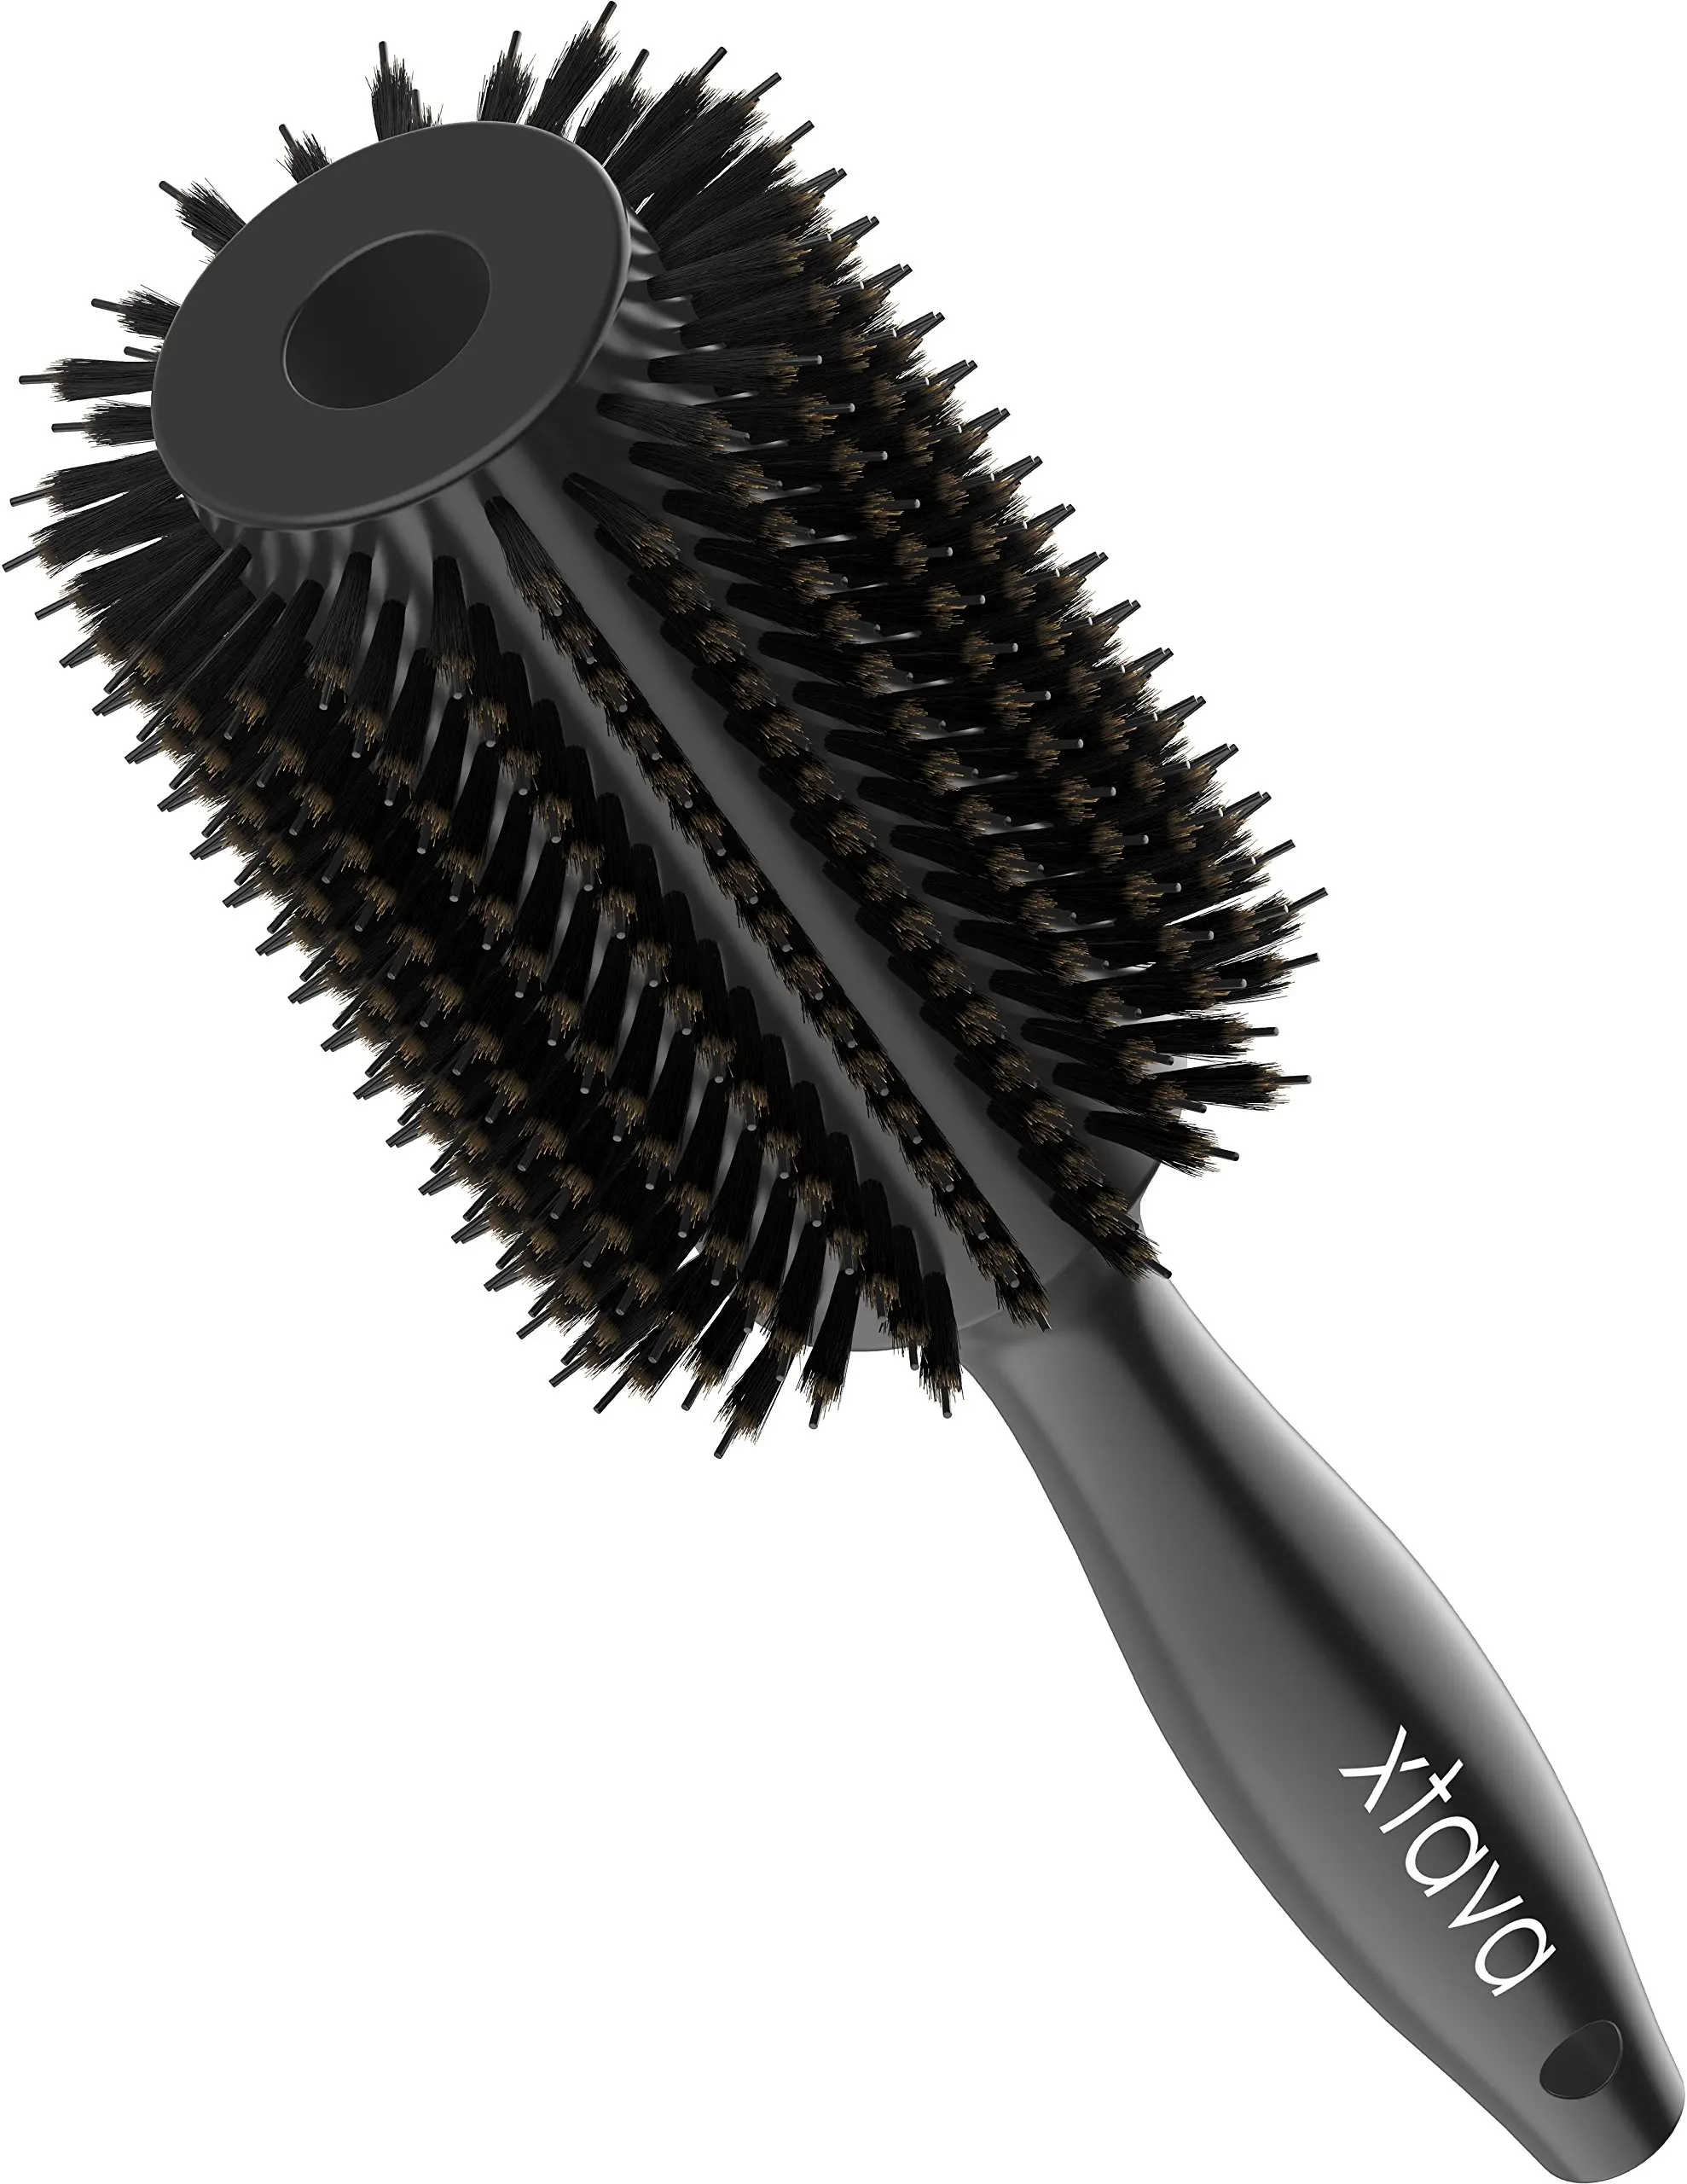 Cheap Round Bristle Hair Brush Find Round Bristle Hair Brush Deals On Line At